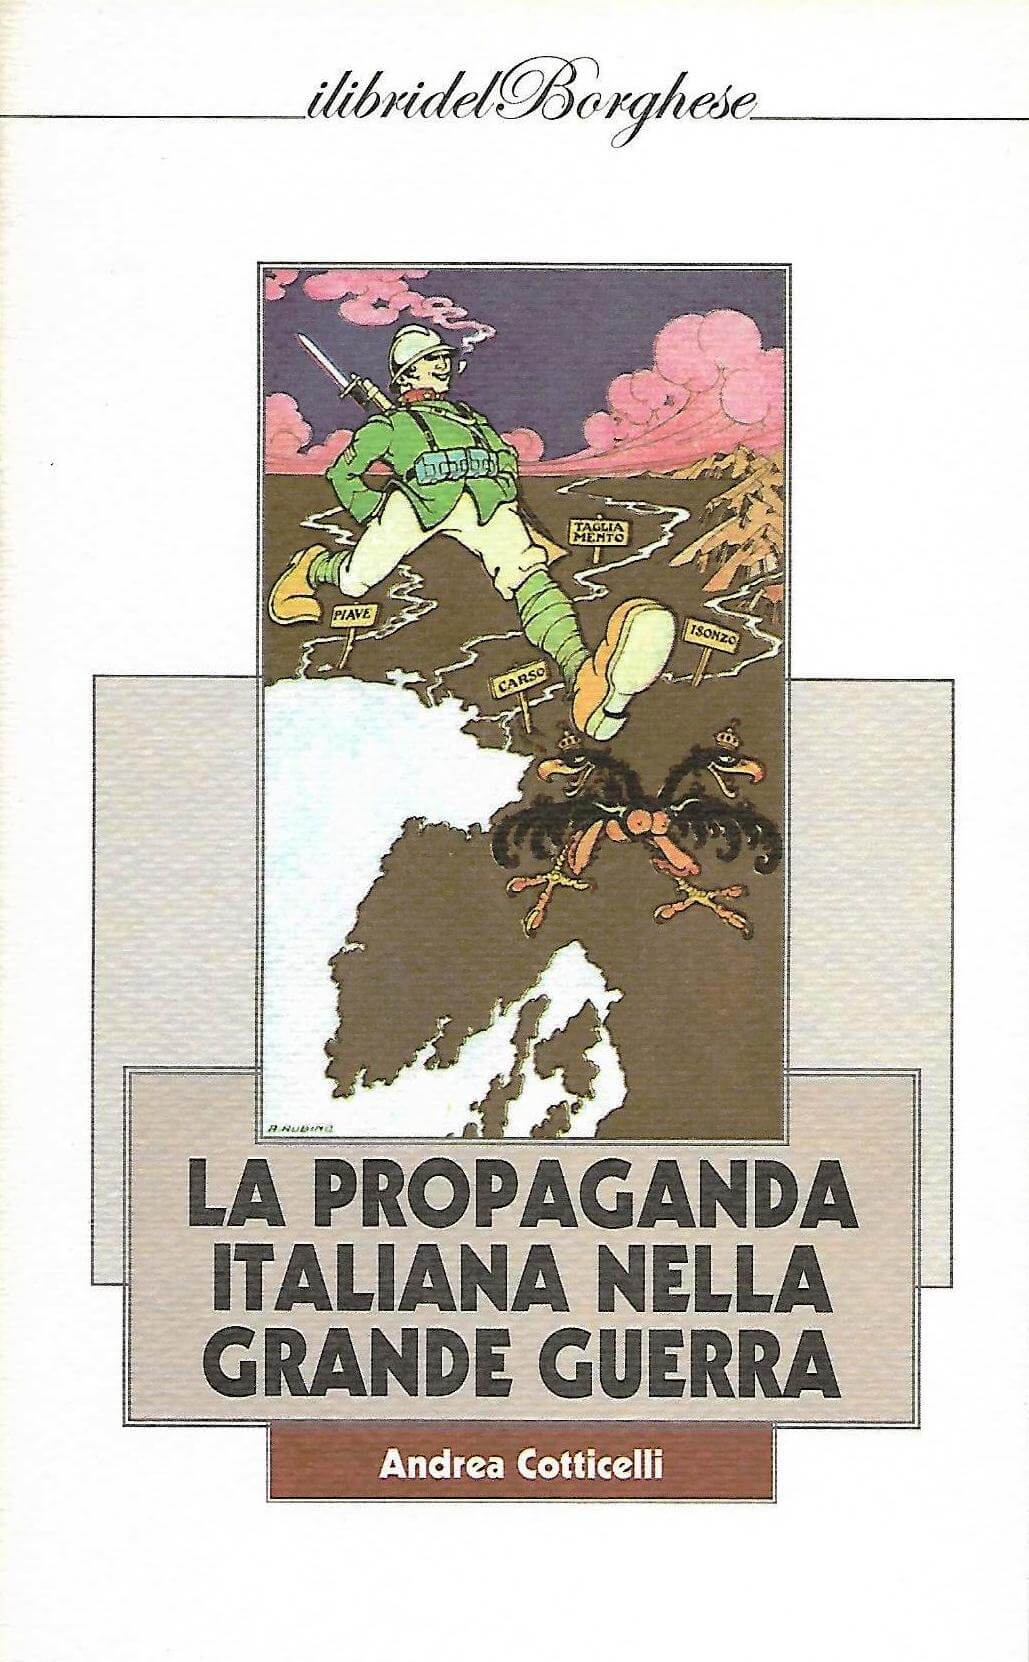 Libro di Andrea Cotticelli: La Propaganda Italiana nella Grande Guerra